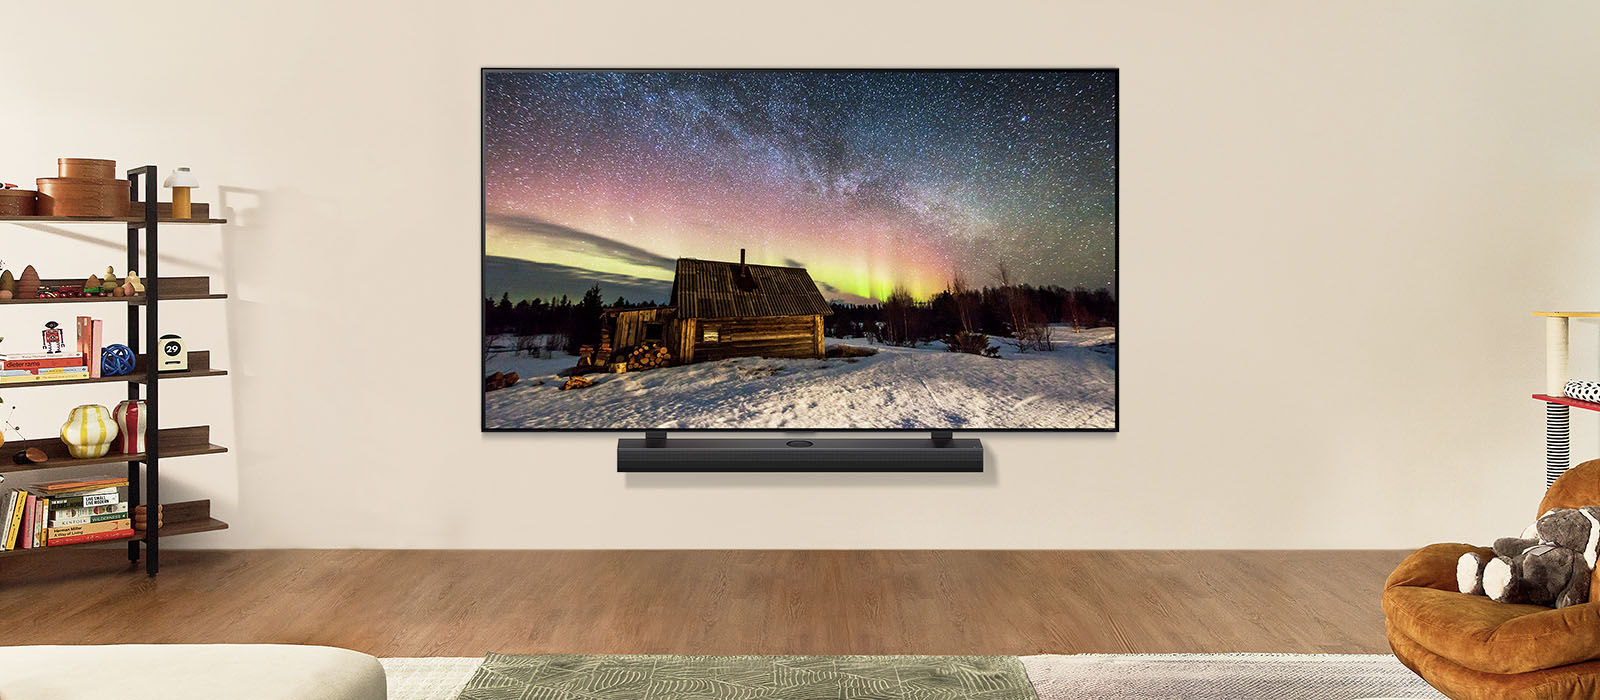 LG TV og LG Soundbar i et moderne oppholdsrom på dagtid. Et skjermbilde av nordlys vises med de ideelle lysstyrkenivåene.